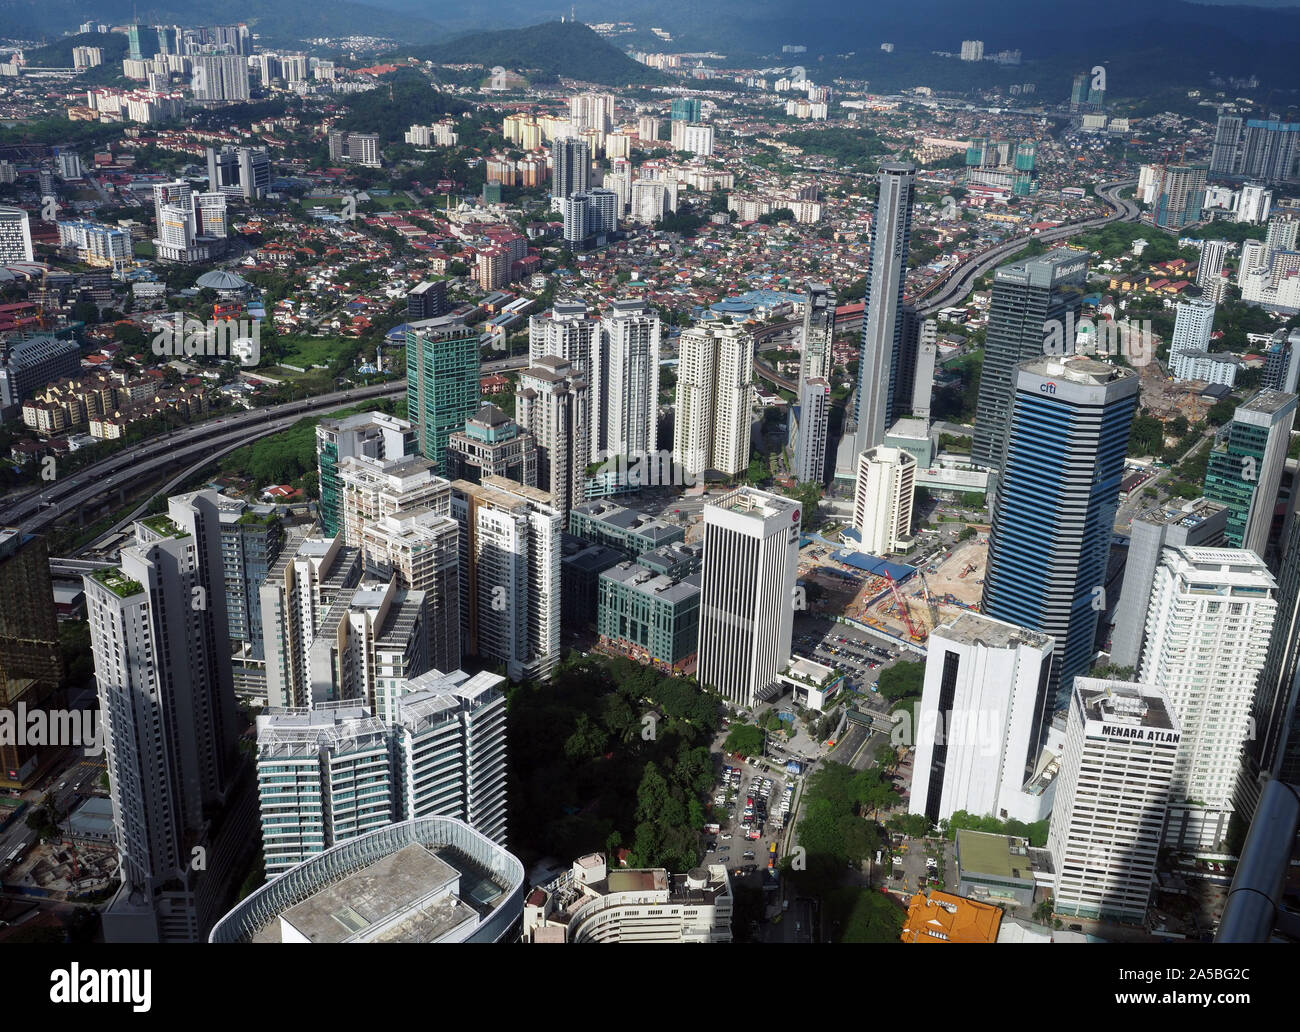 Kuala Lumpur city, old and new buildings in Kuala Lumpur, Malaysia Stock Photo